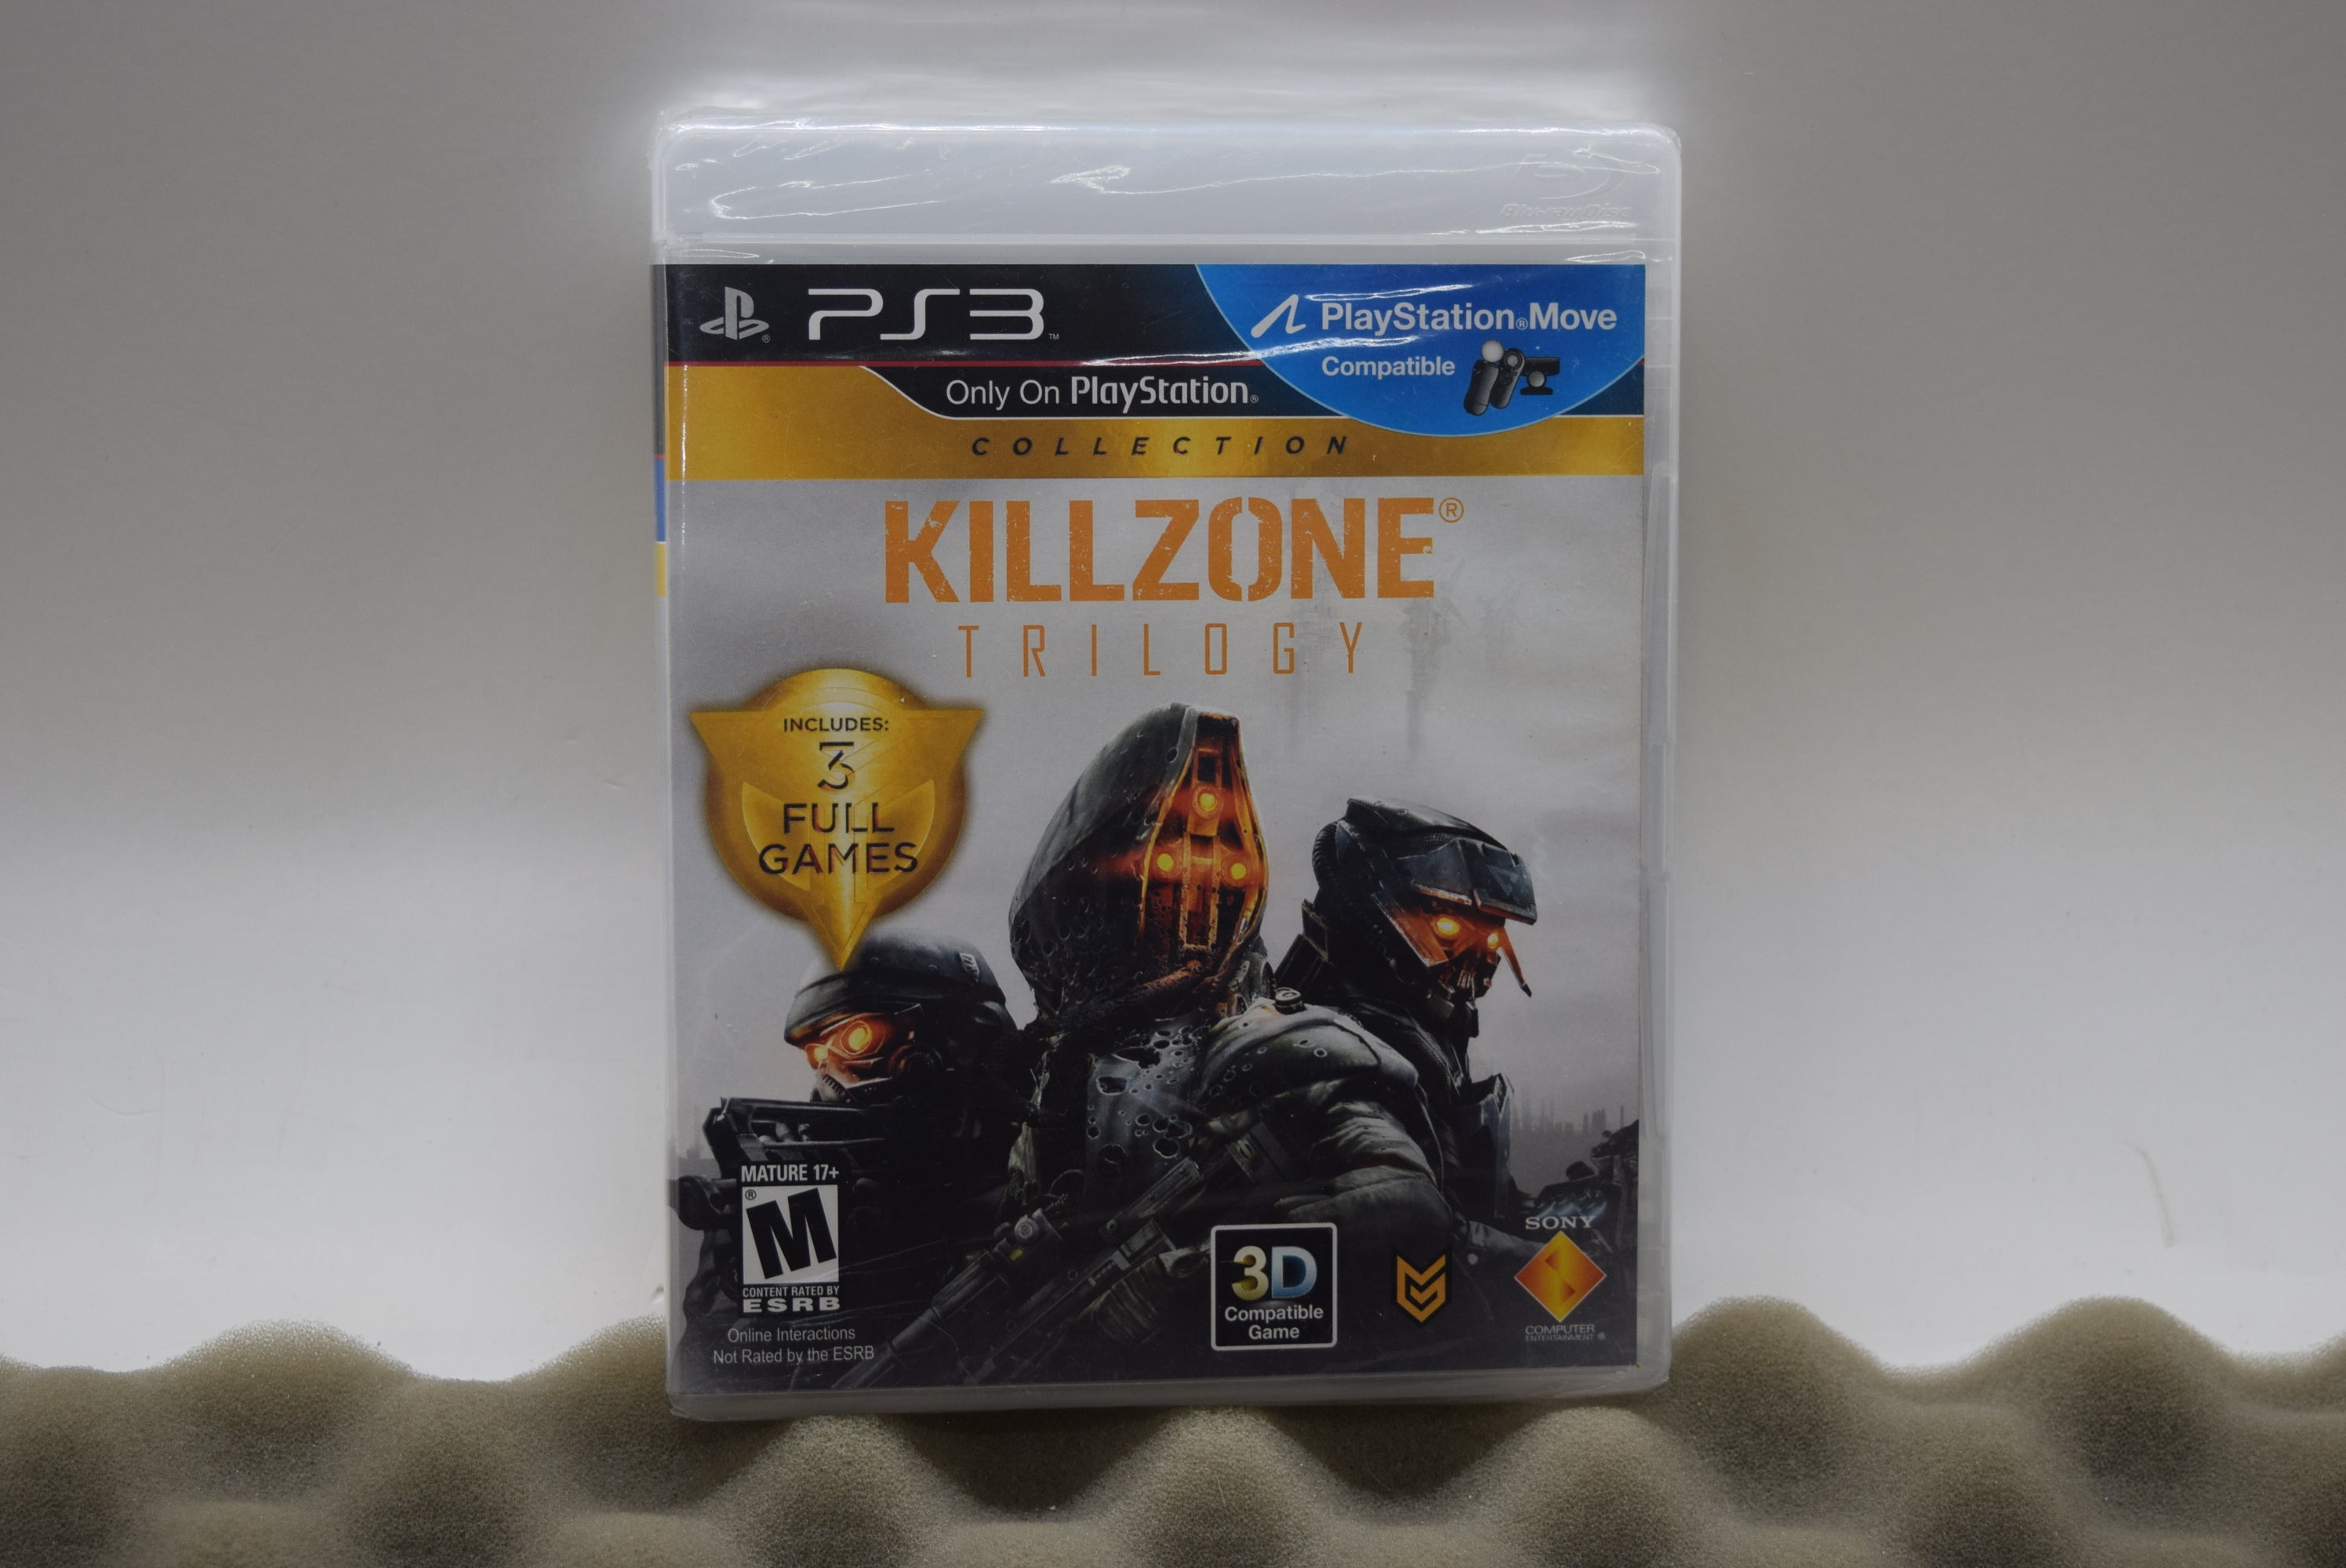 KILLZONE HD - PS3 - VT GAMES